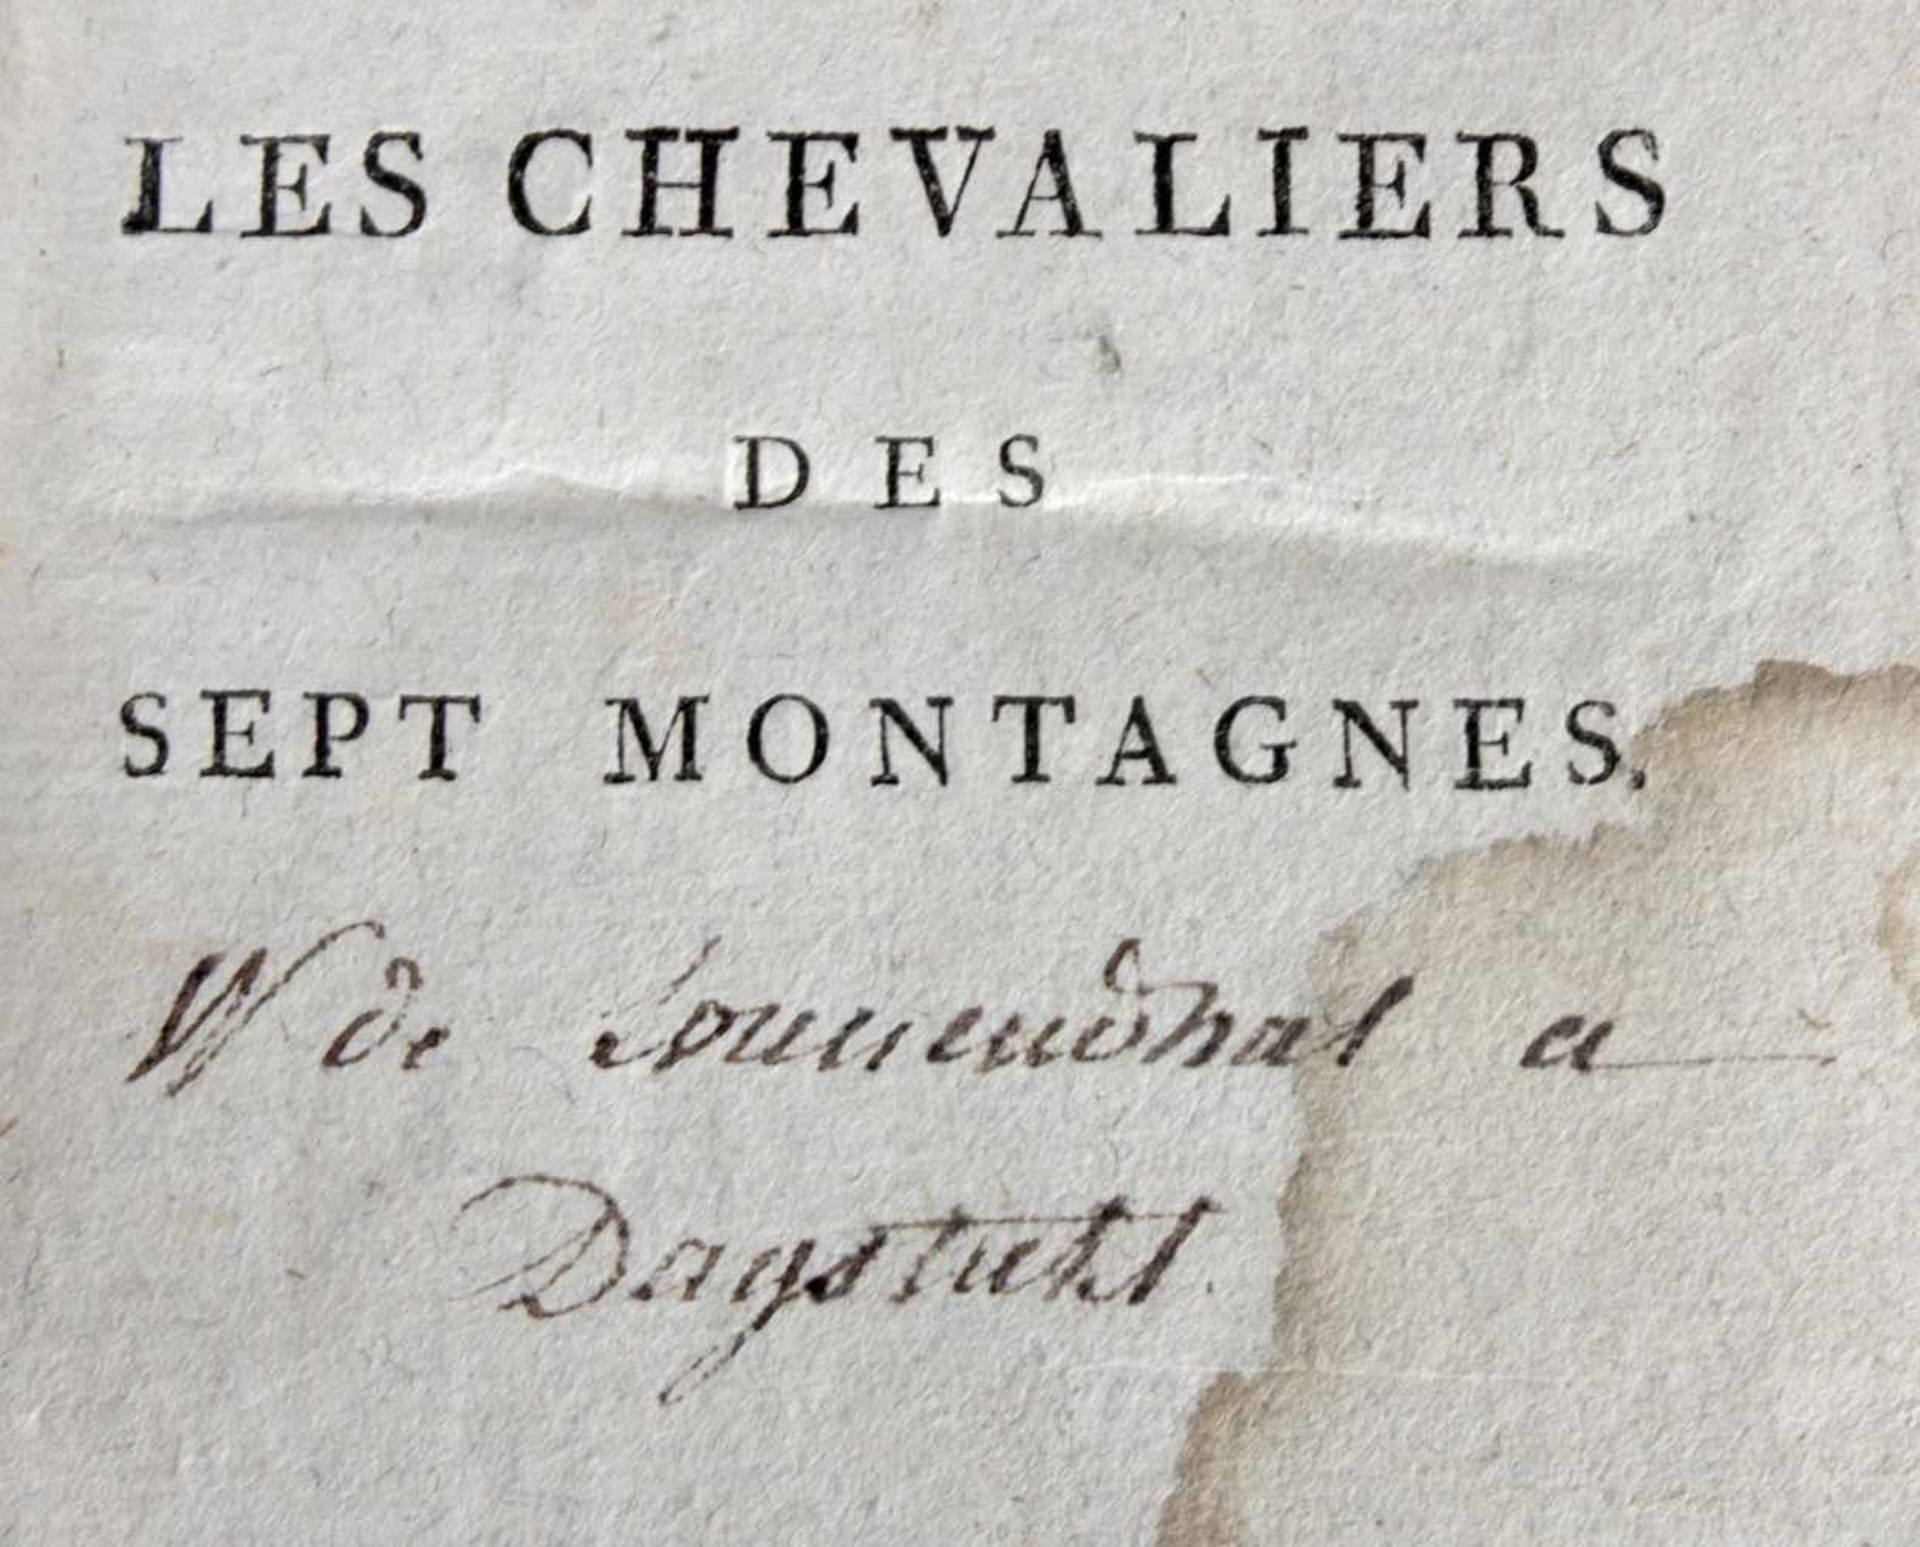 Les Chevaliers des sept Montagnes - Image 2 of 2